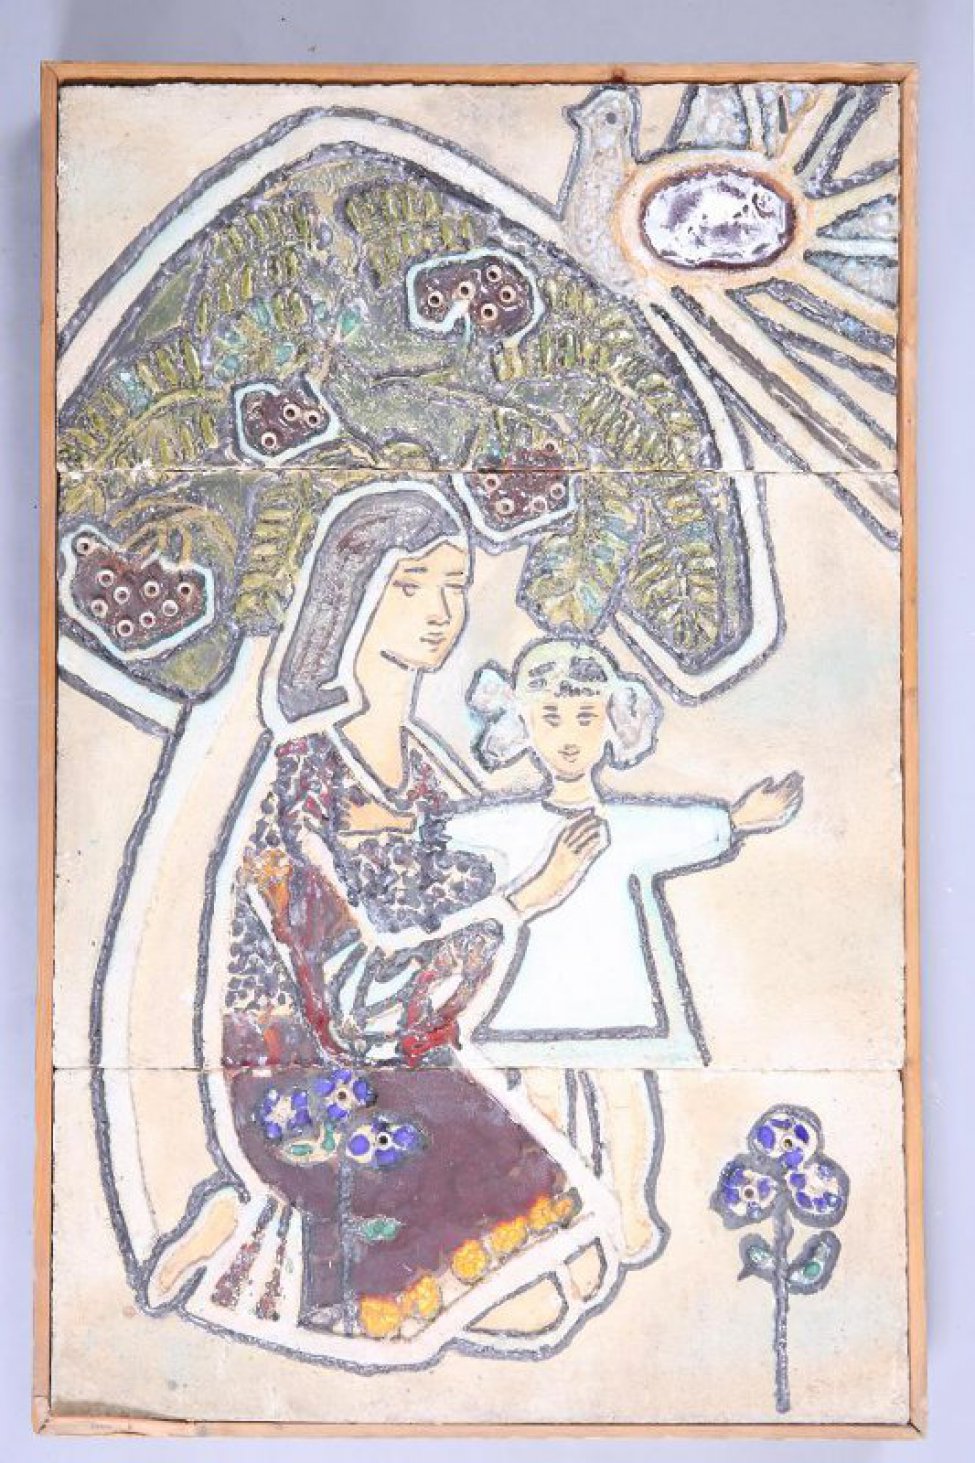 Рельефная композиция, состоящая из 3-х разновеликих горизонтальных частей, скрепленная рамой: изображено стилизованное дерево с широкой кроной под которой на коленях стоит молодая женщина, держащая  девочку с распростертыми руками, в правом верхнем углу - птица, в нижнем - цветок.